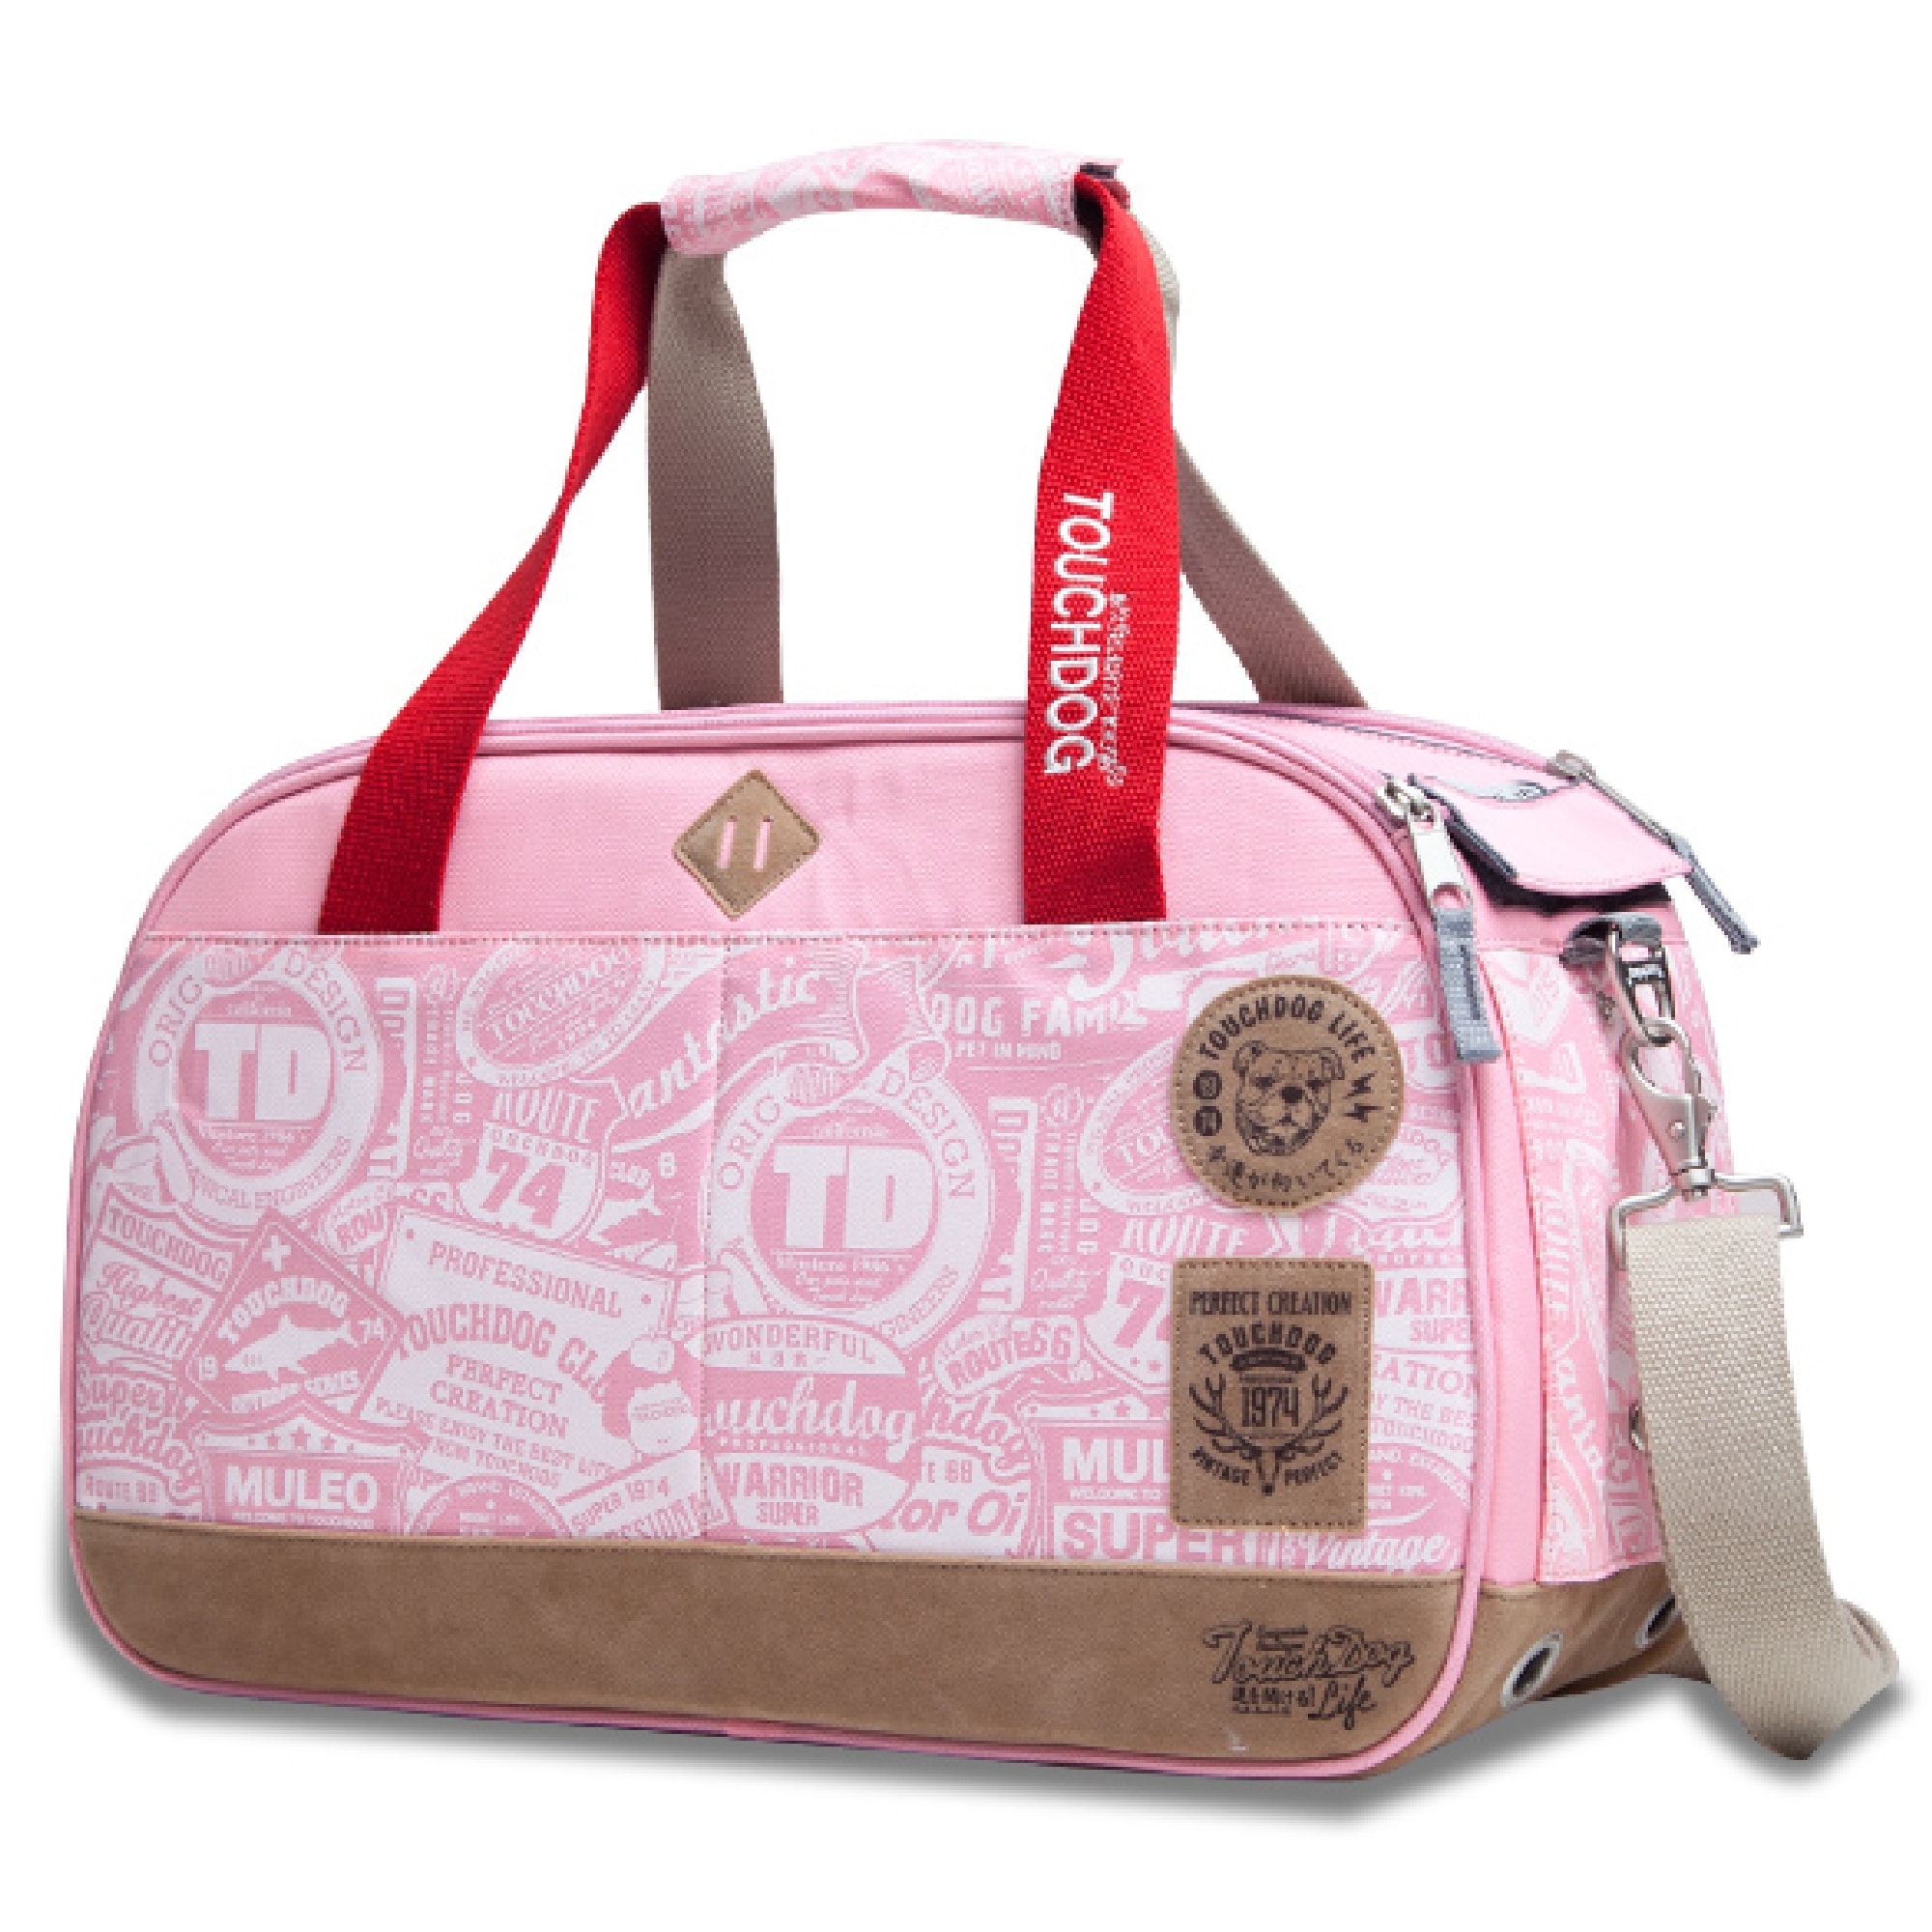 Dogline Pet Carrier Bag - Pink